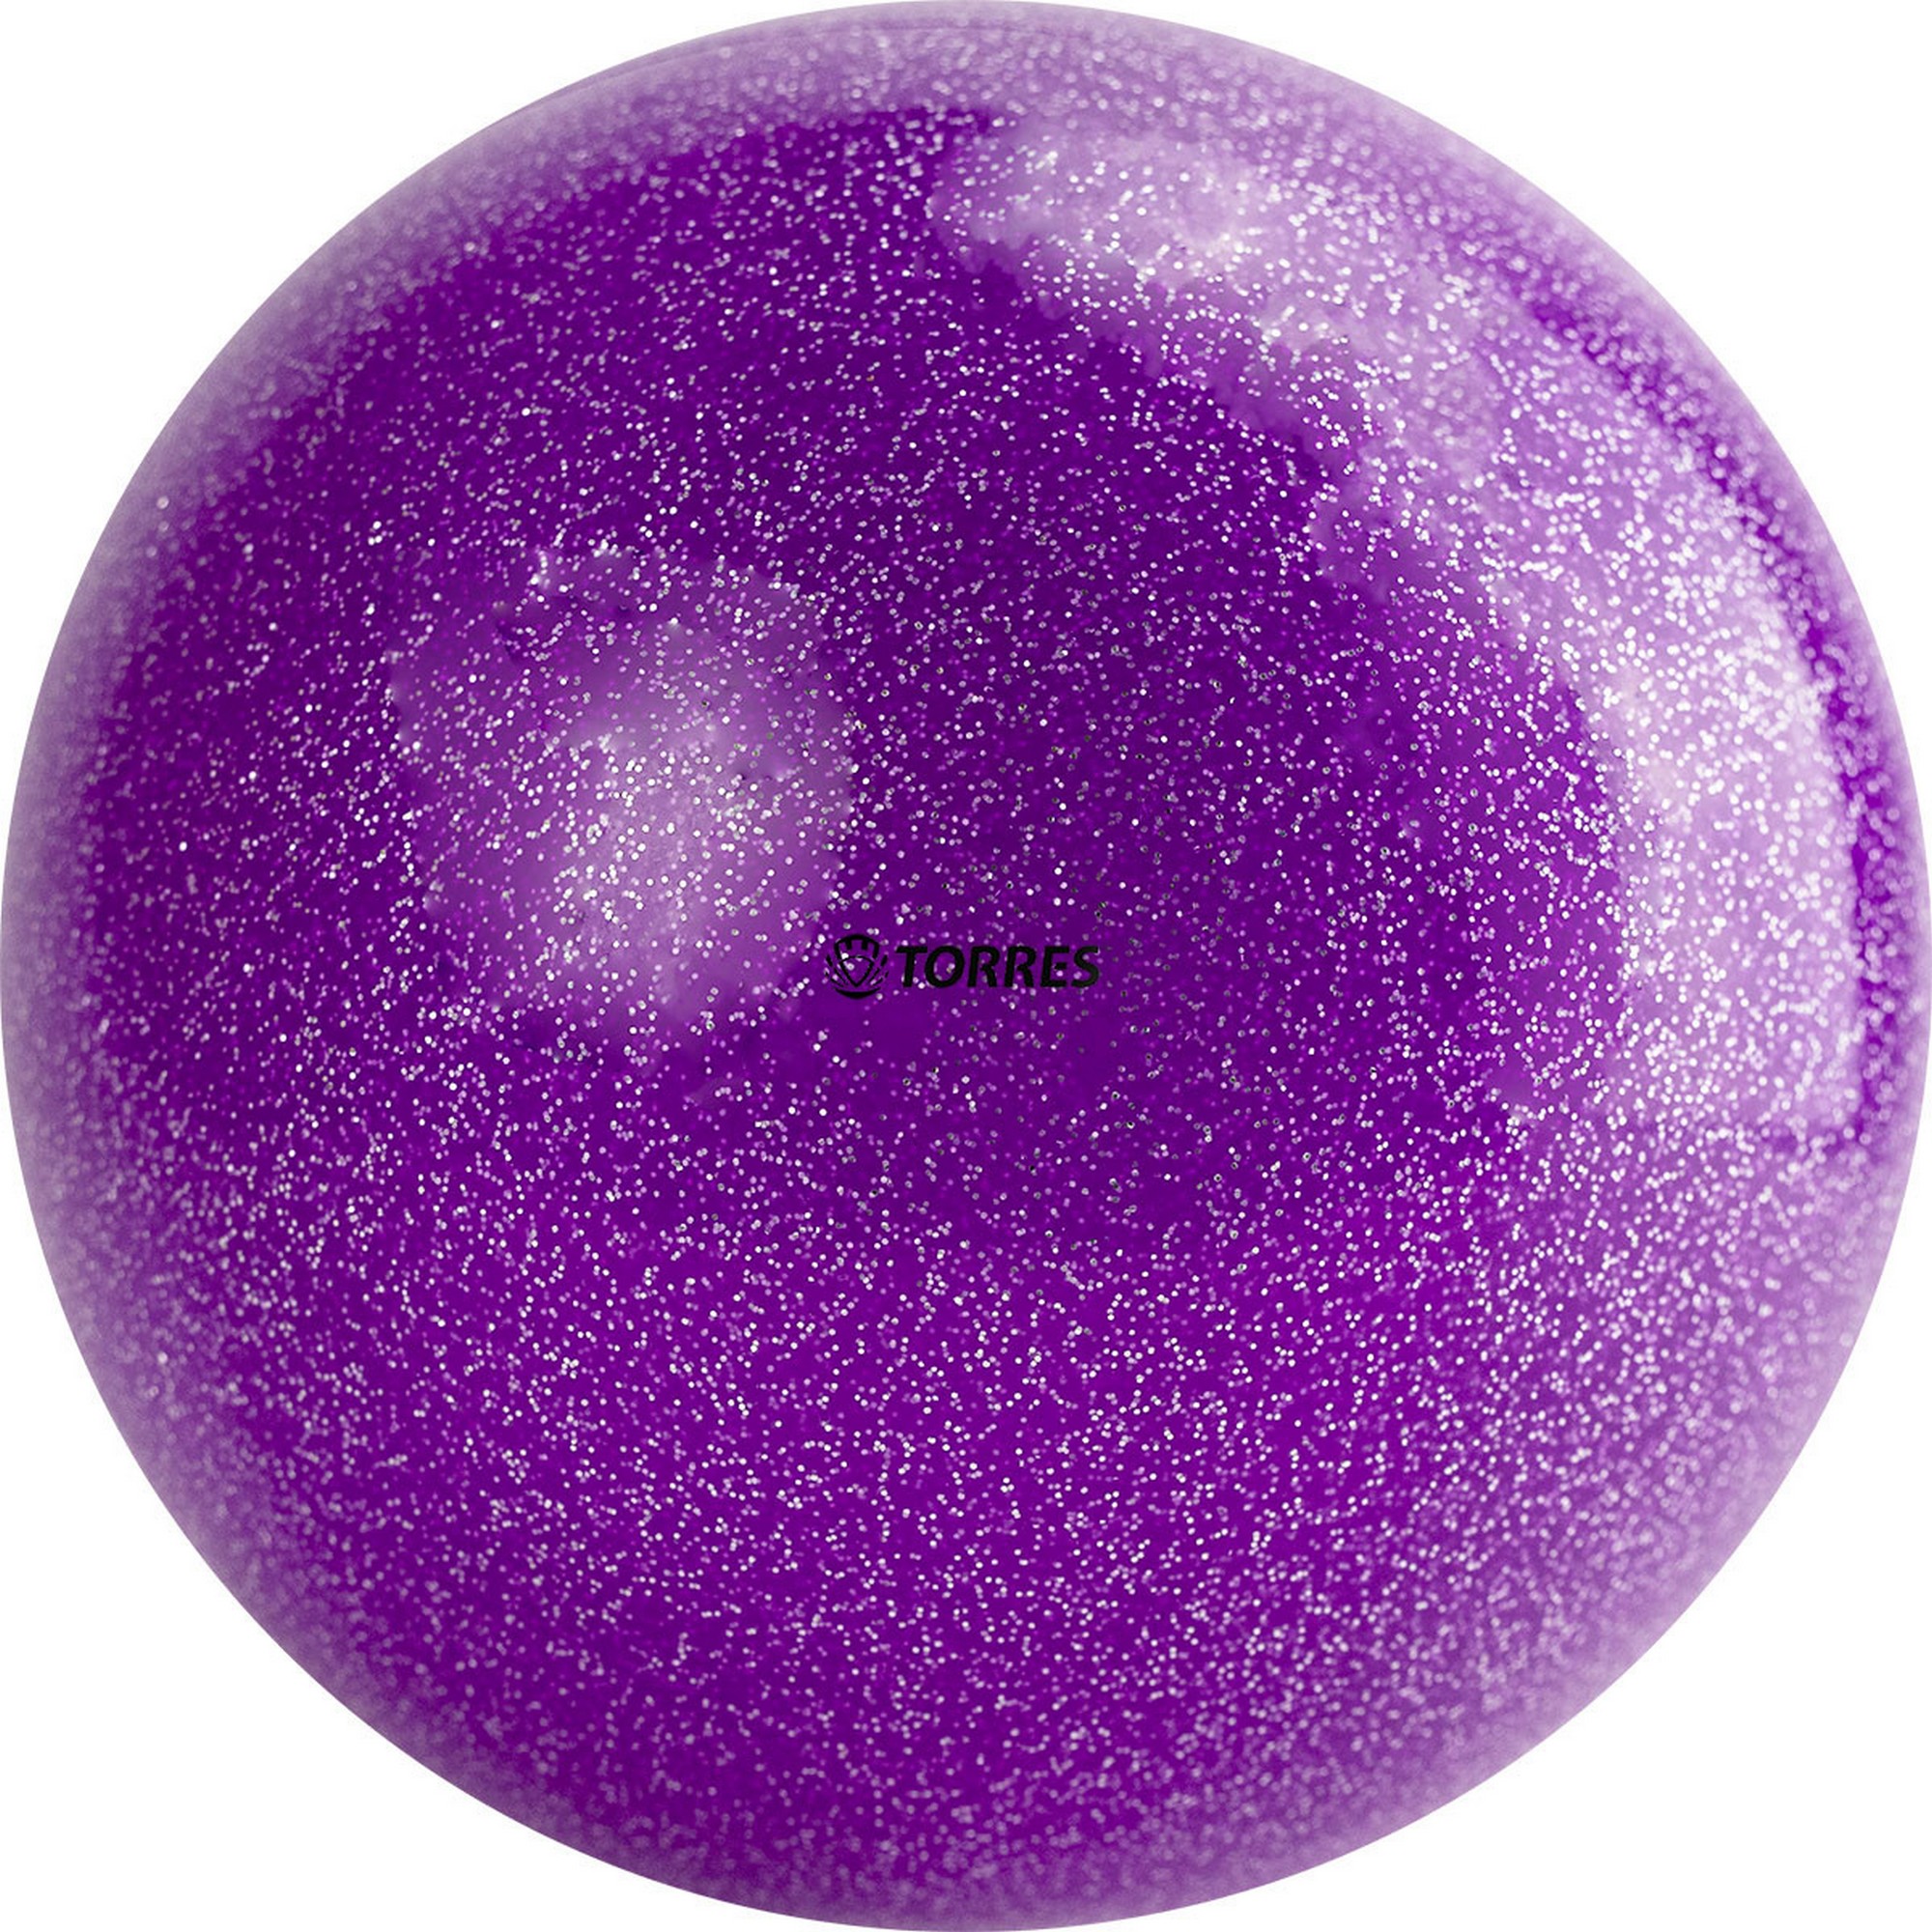 Мяч для художественной гимнастики d19см Torres ПВХ AGP-19-07 фиолетовый с блестками 2000_2000